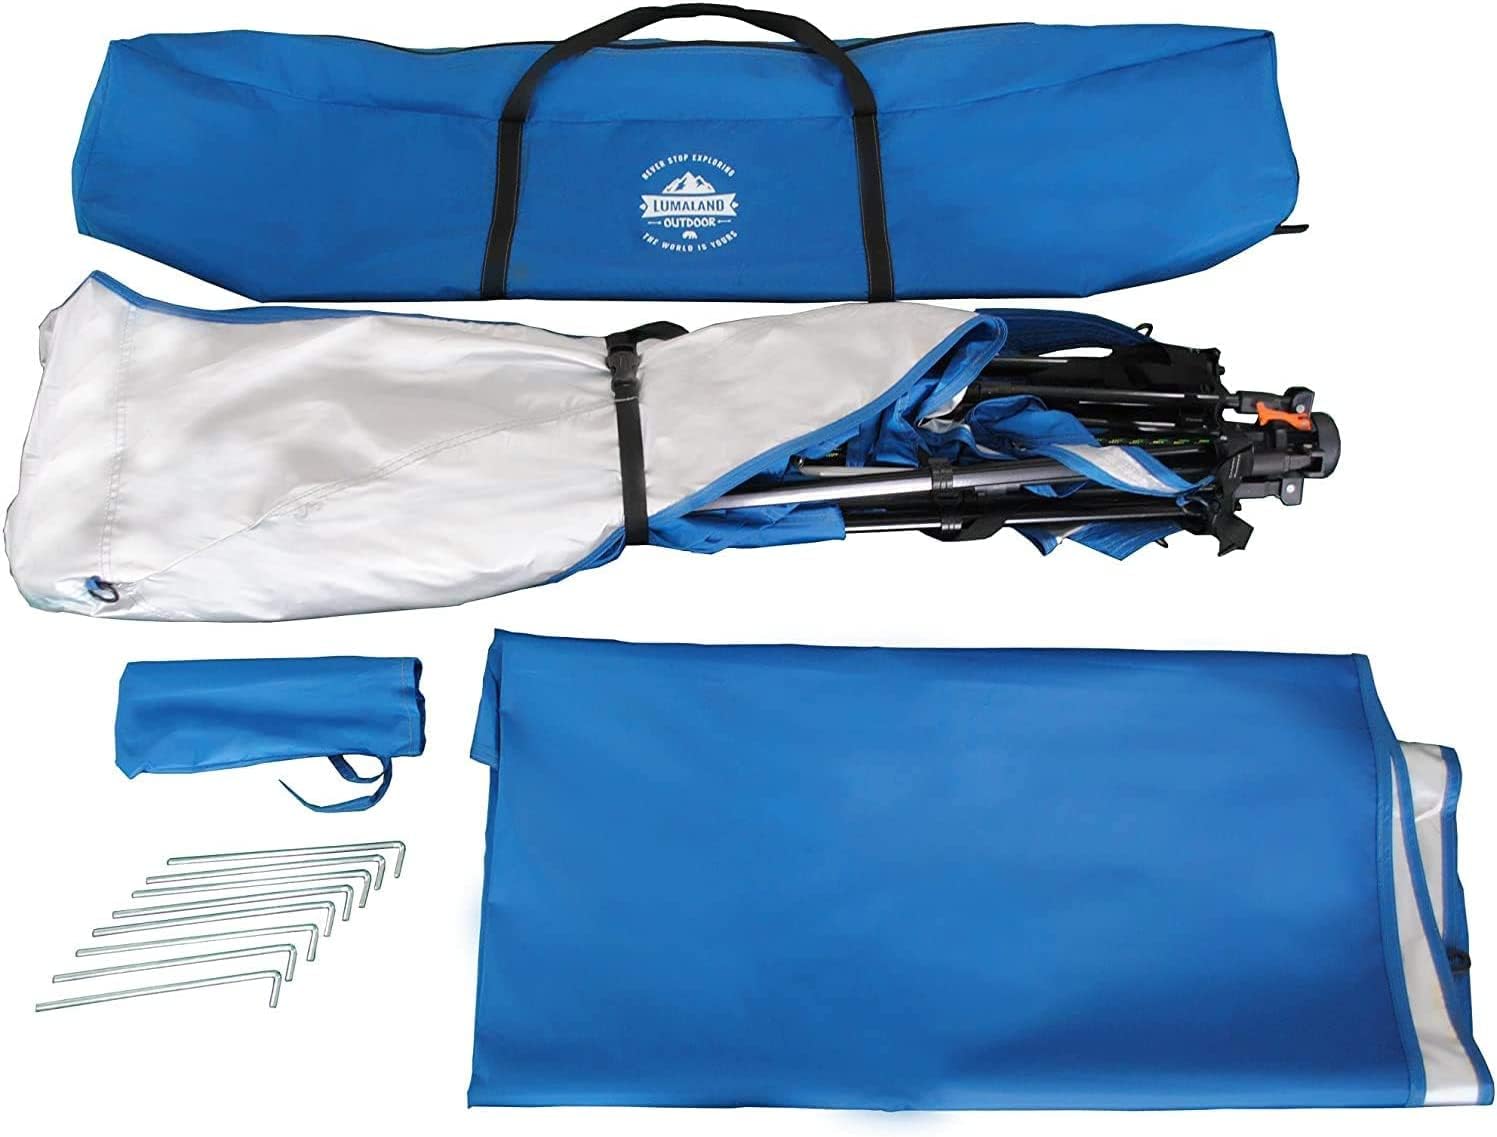 lumaland gazebo tent blue polyester gazebo waterproof package